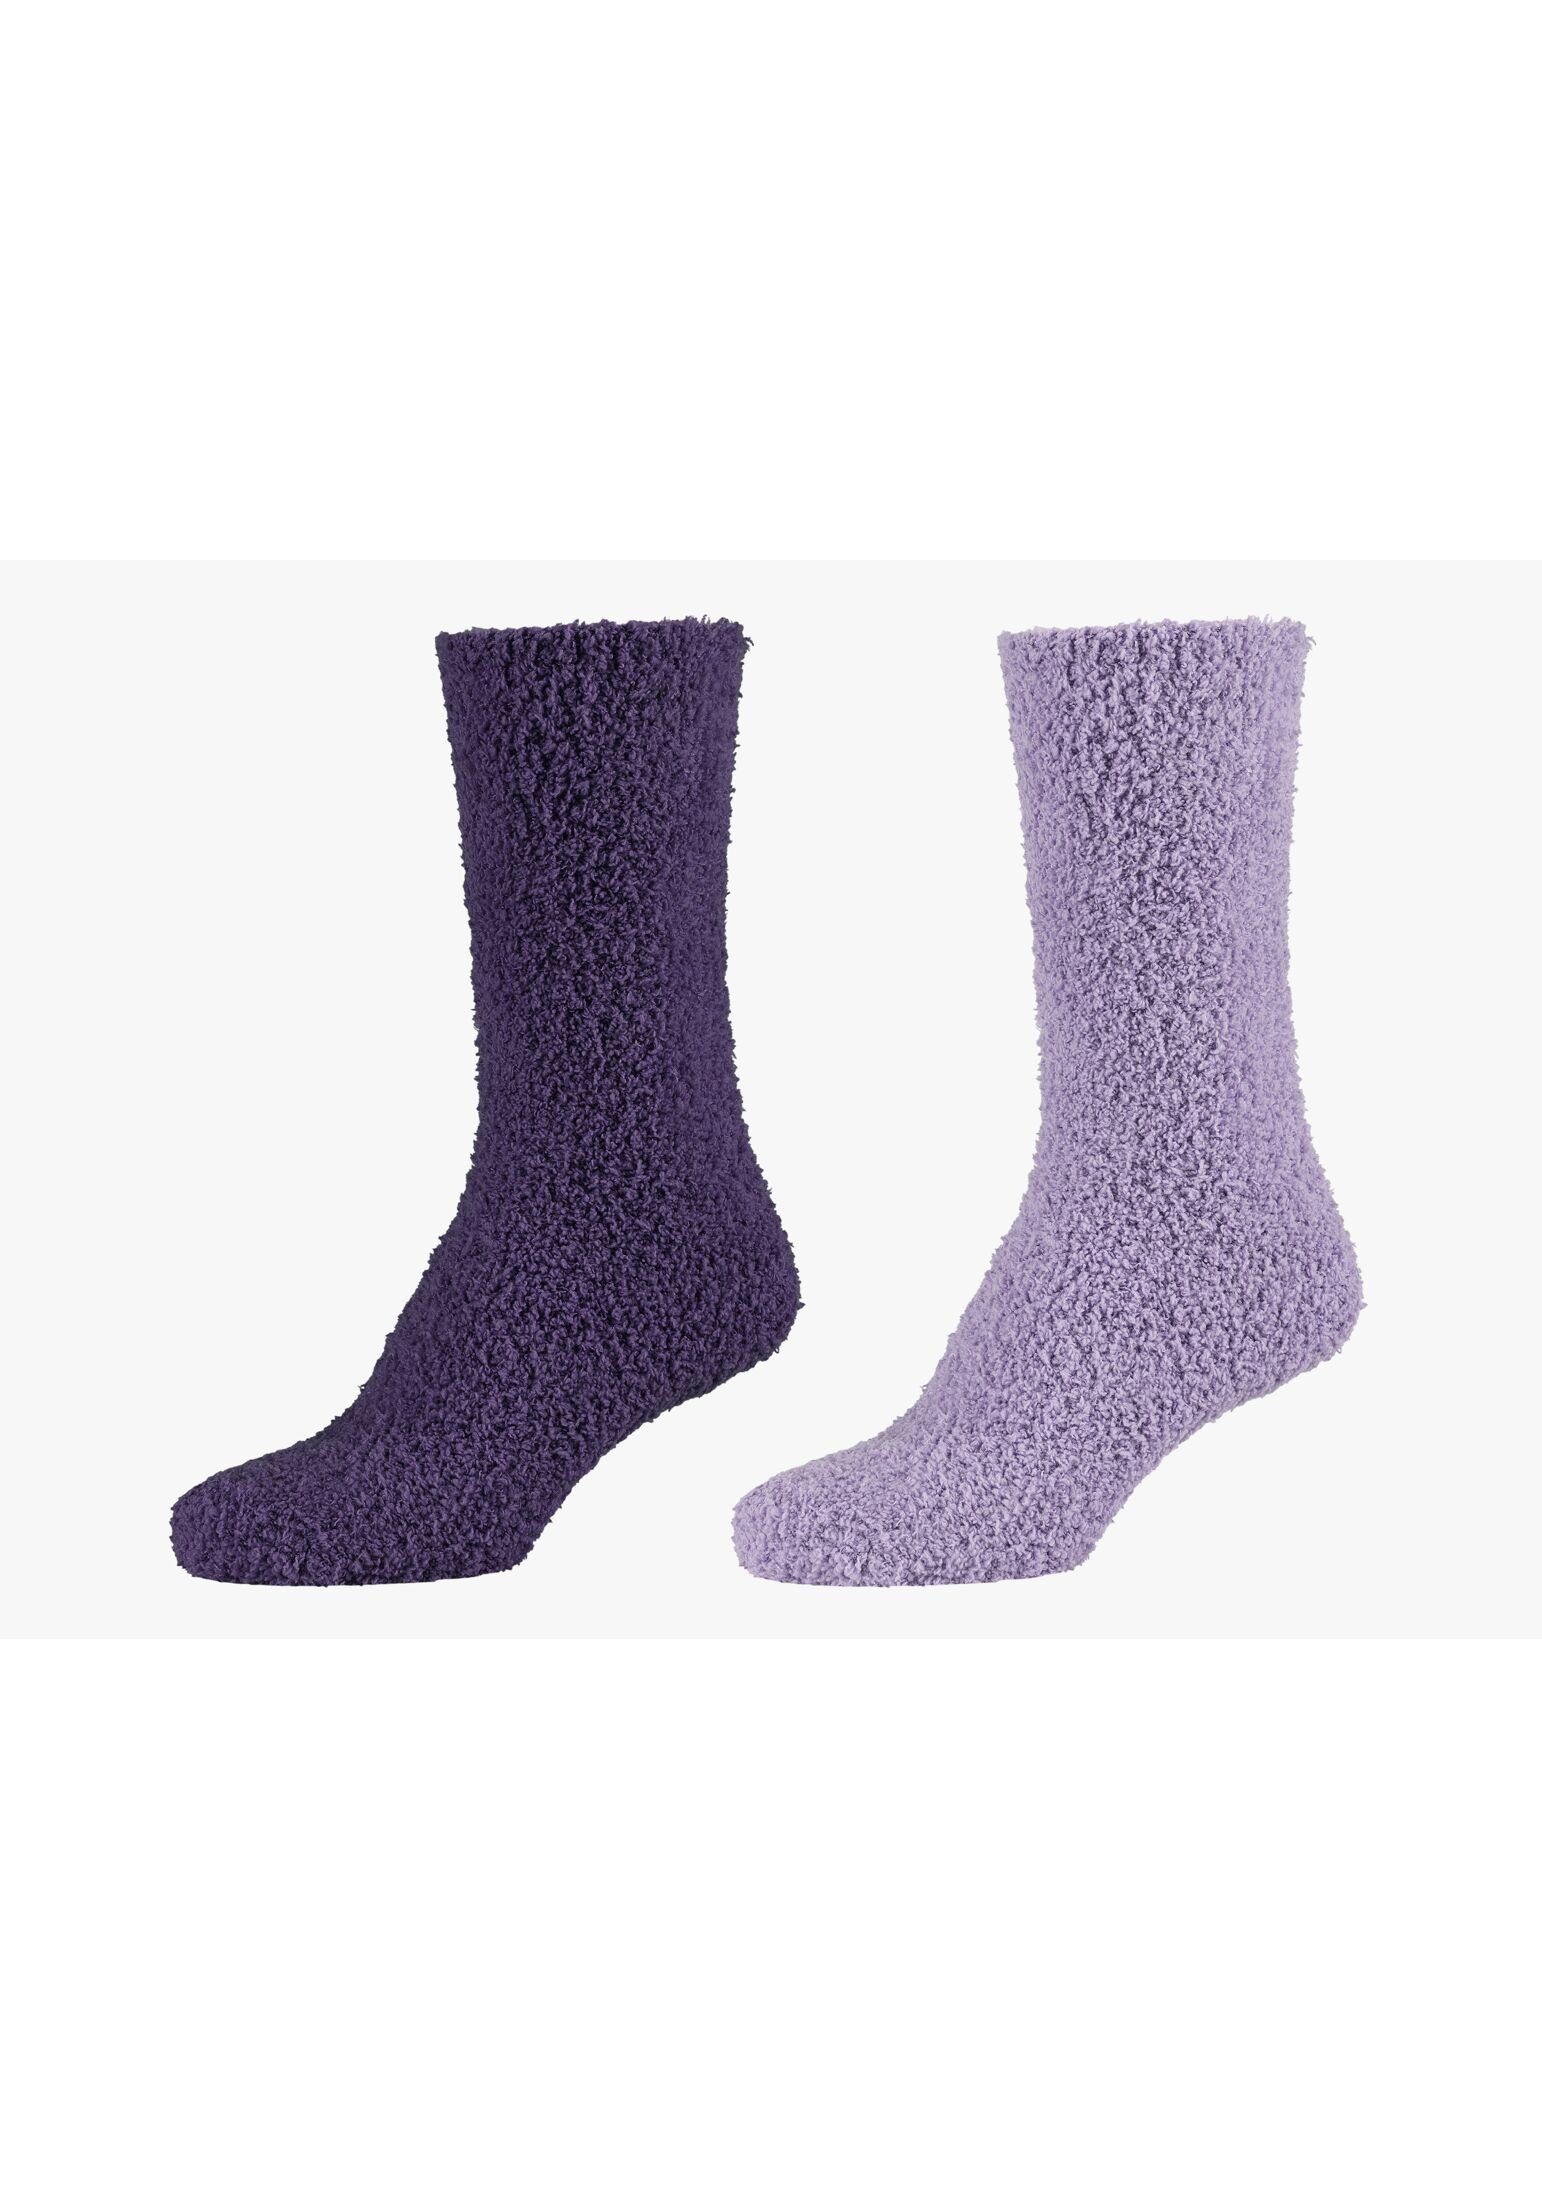 Warm Socken Damen Flauschig Cosy purple Socken mulberry Lang Kuschelsocken Camano